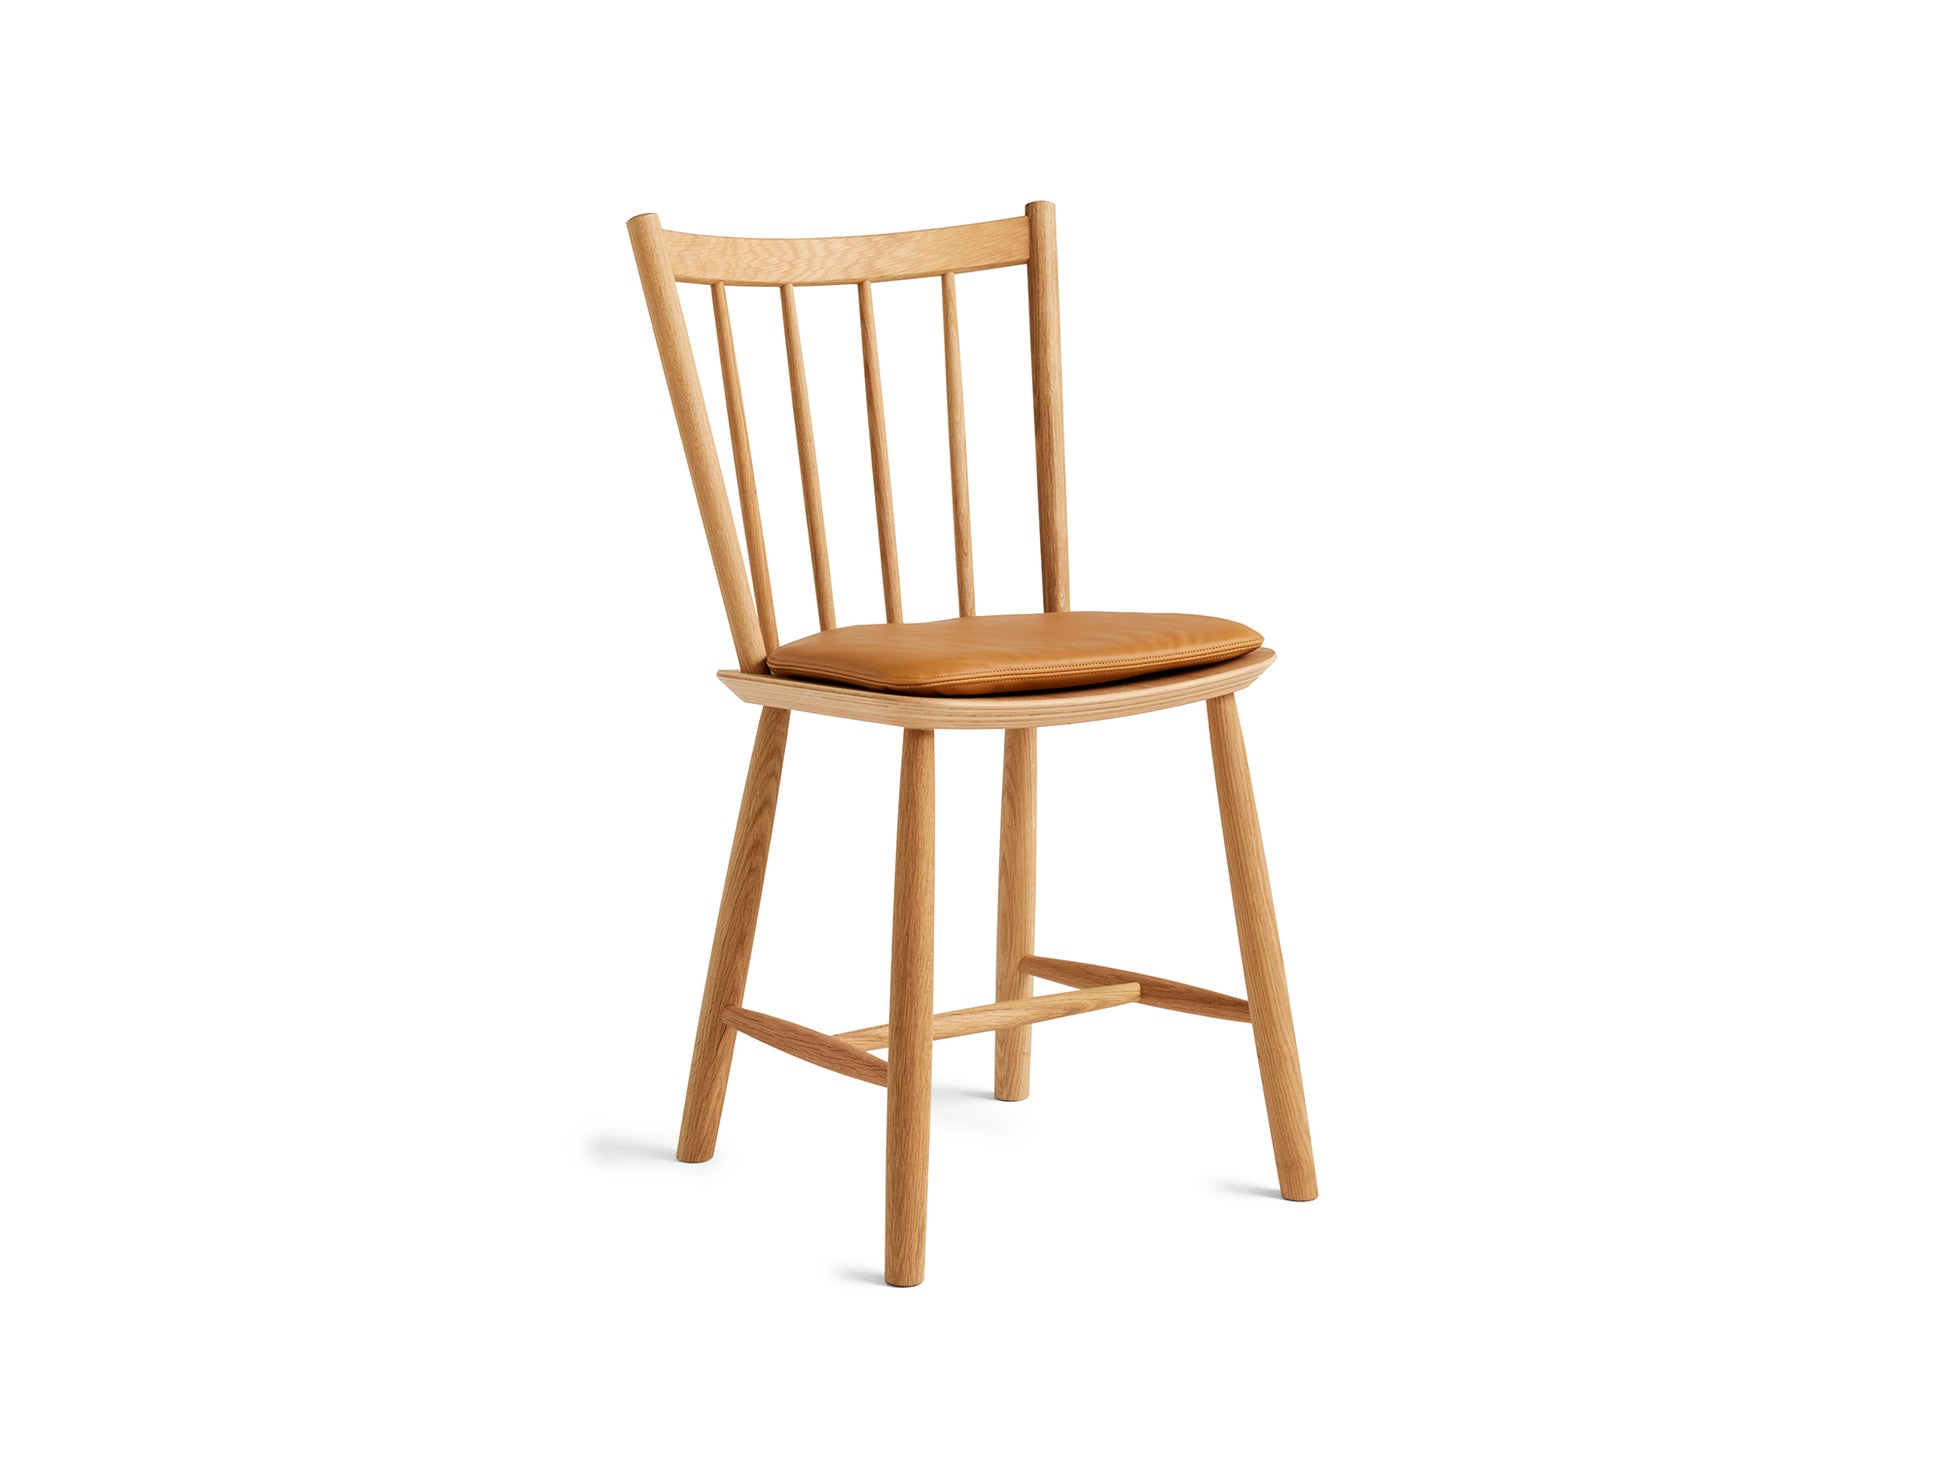 HAY J41 oiled oak chair / Sense cognac seat cushion 